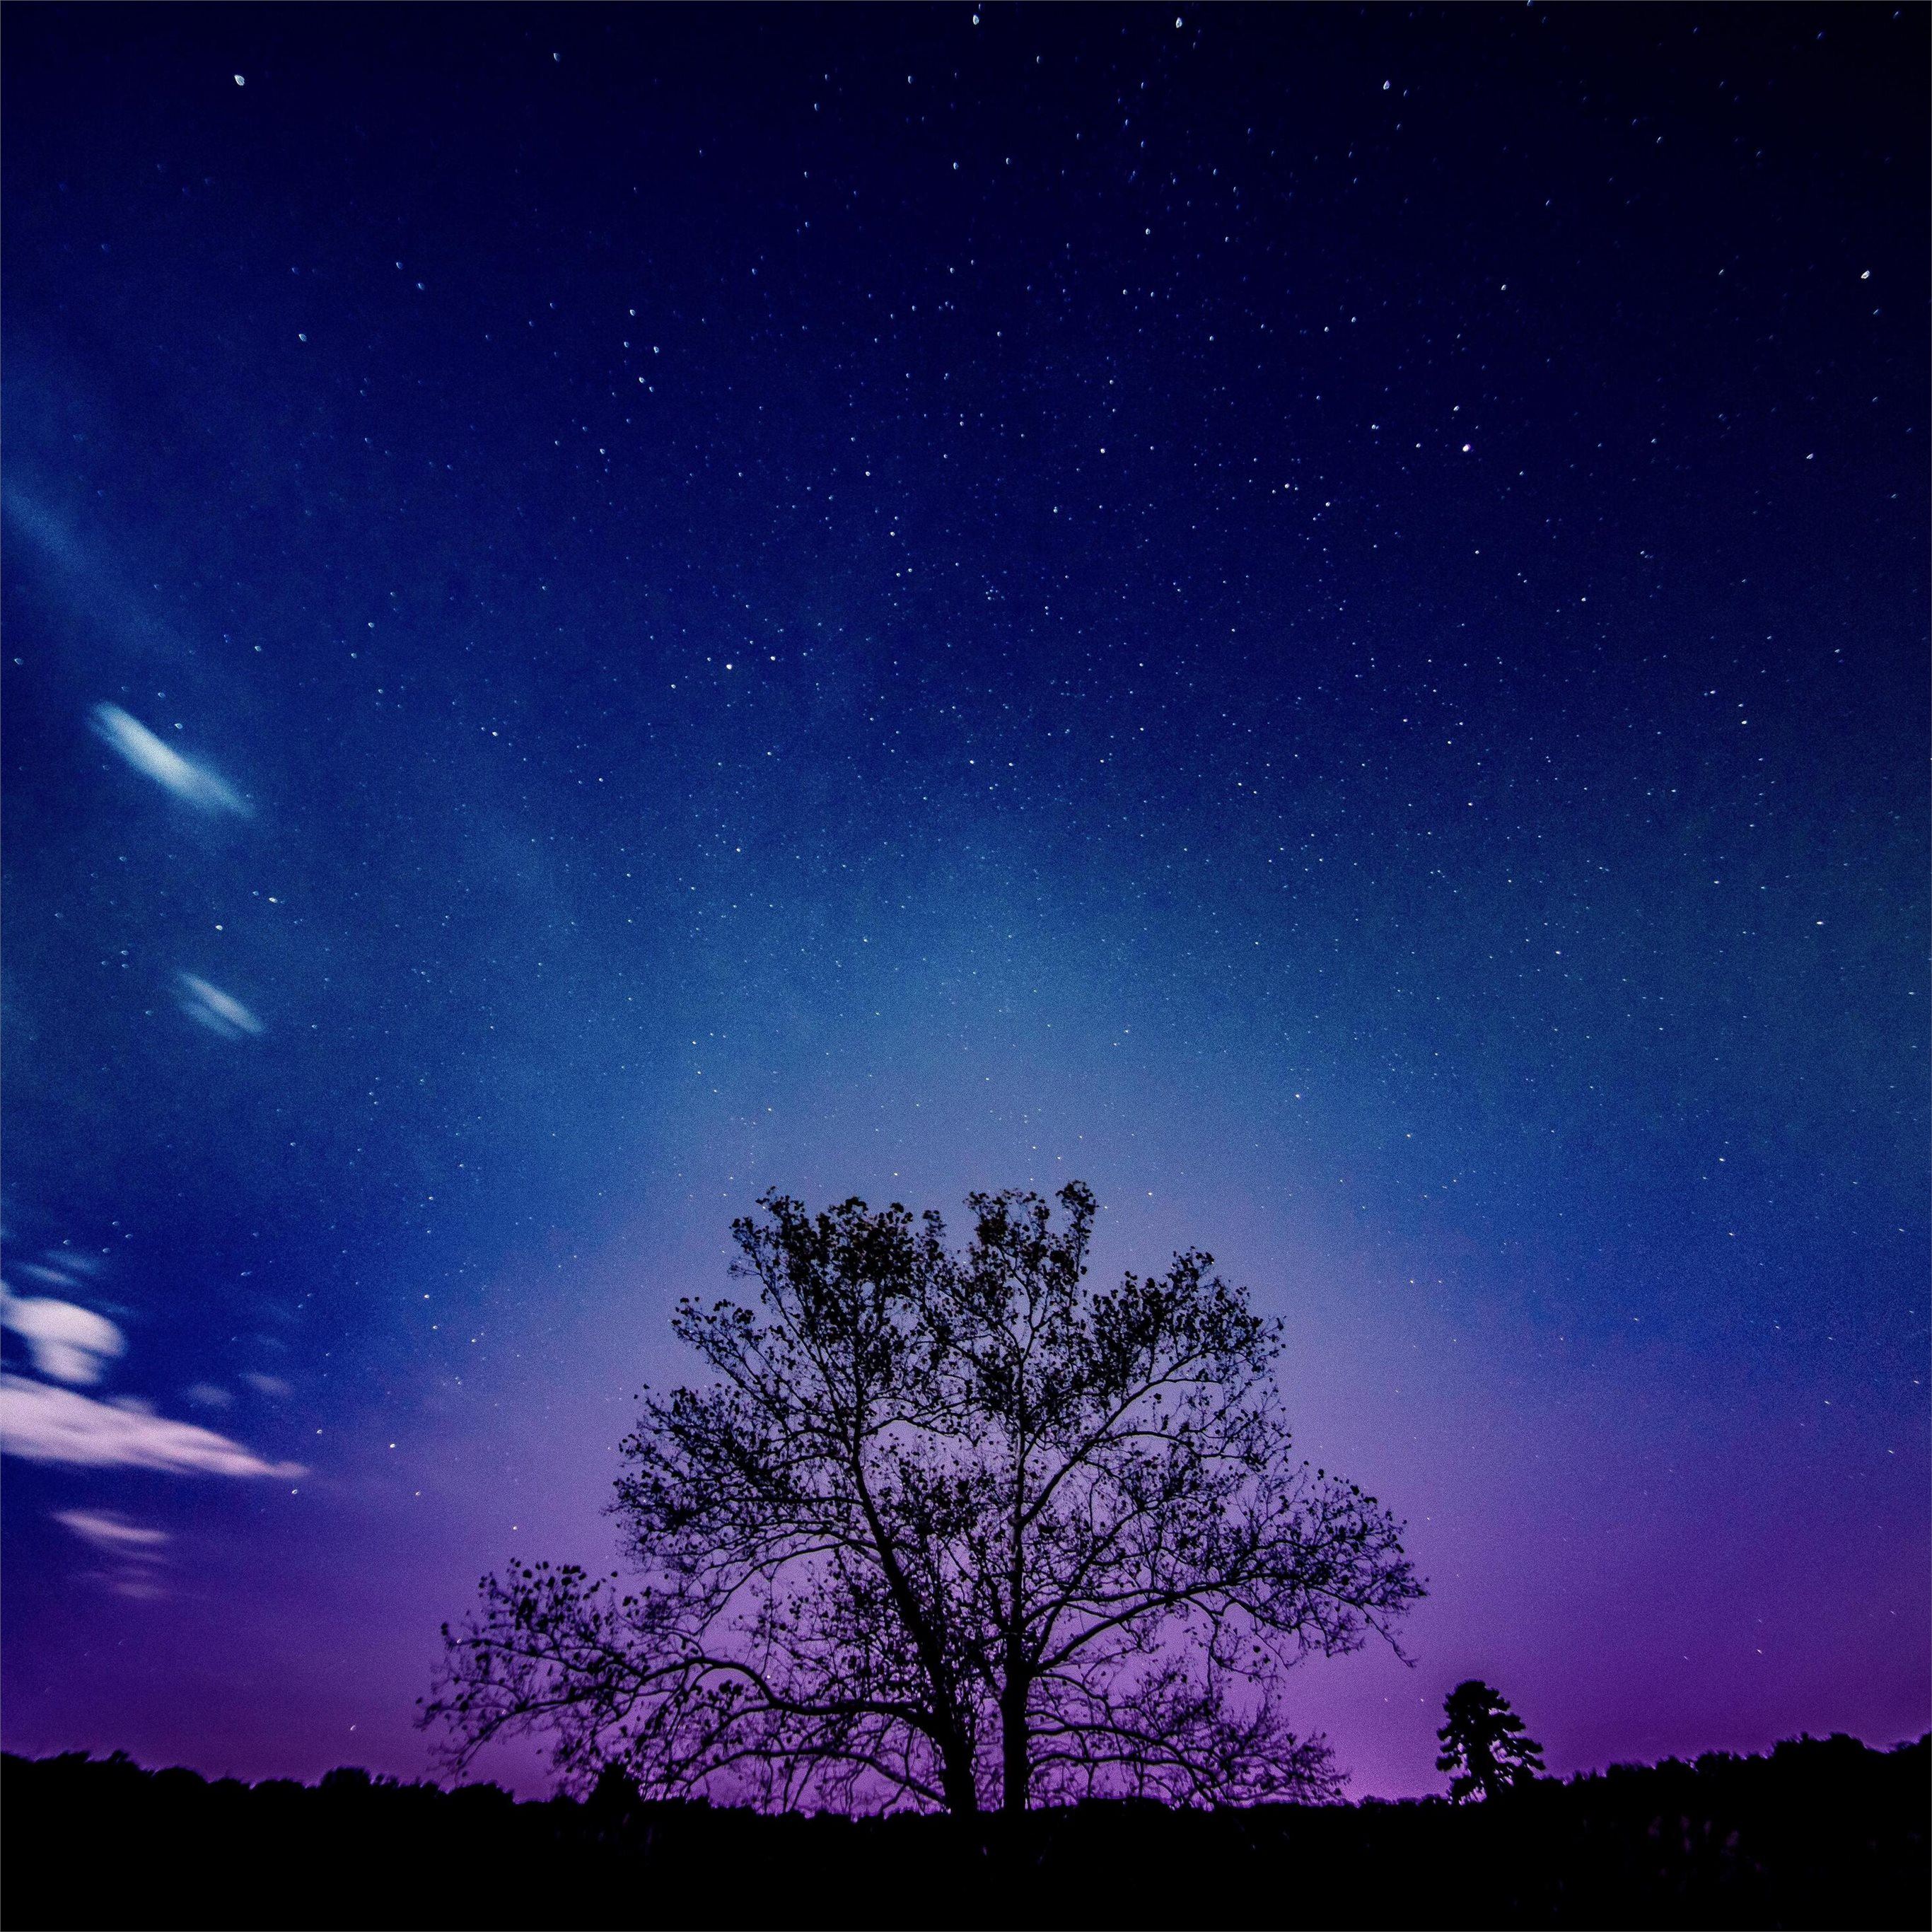 Với bức ảnh cây và dải ngân hà nổi bật trên bầu trời đầy sao, bạn sẽ thấy được sự kết hợp hoàn mỹ giữa thiên nhiên và không gian vũ trụ. Ánh sáng tàn trang trên chiếc lá cây tạo nên một không gian độc đáo và rất đẹp mắt. Hãy chiêm ngưỡng và cảm nhận vẻ đẹp của bức ảnh này.